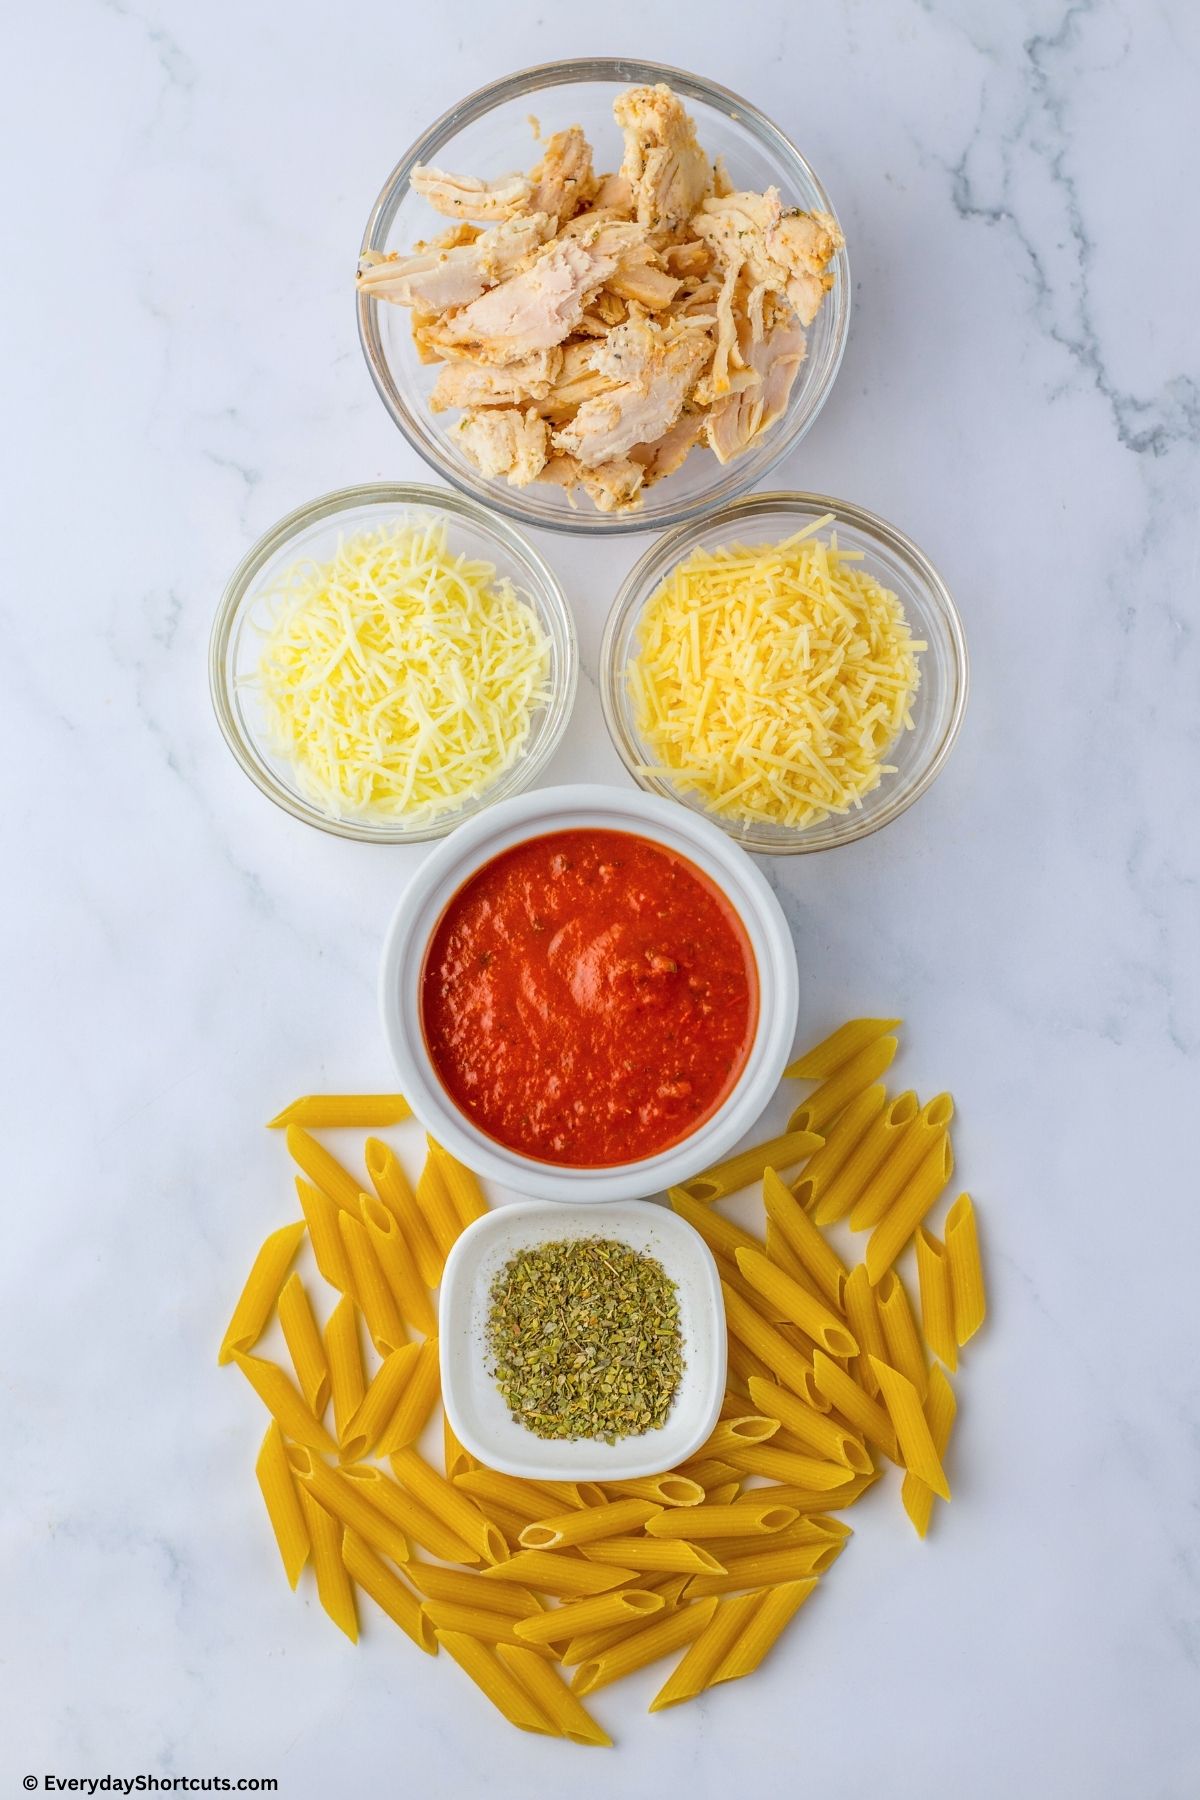 ingredients for chicken parmesan casserole